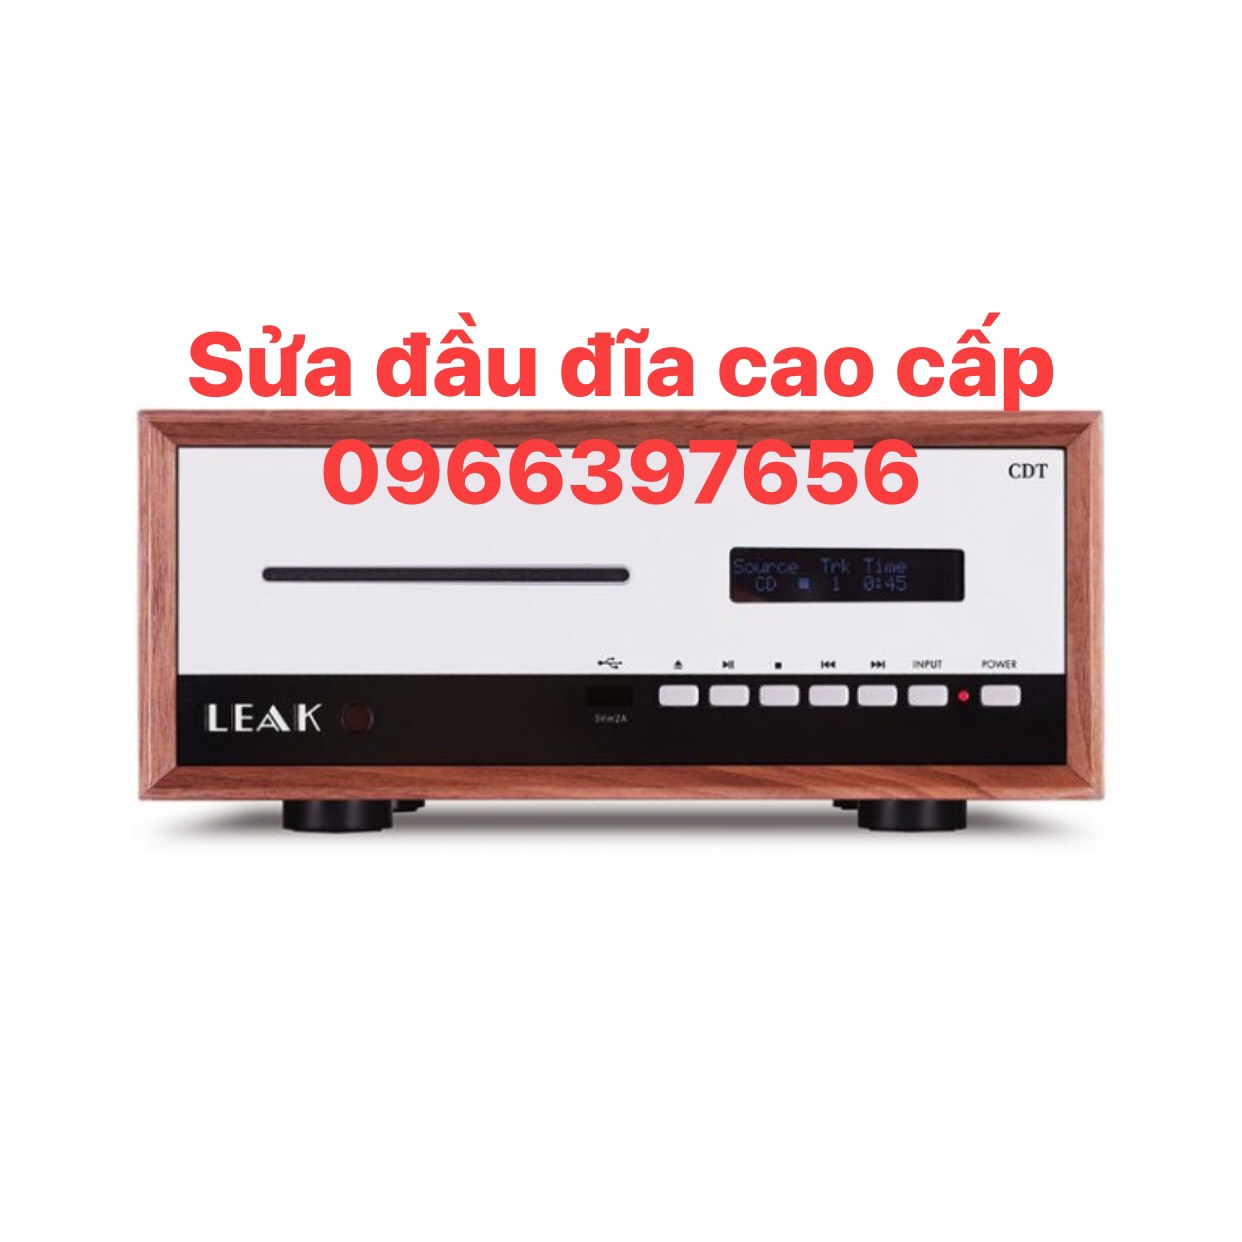 Mách bạn địa chỉ sửa chữa đầu đĩa 120V tại Hà Nội giá rẻ